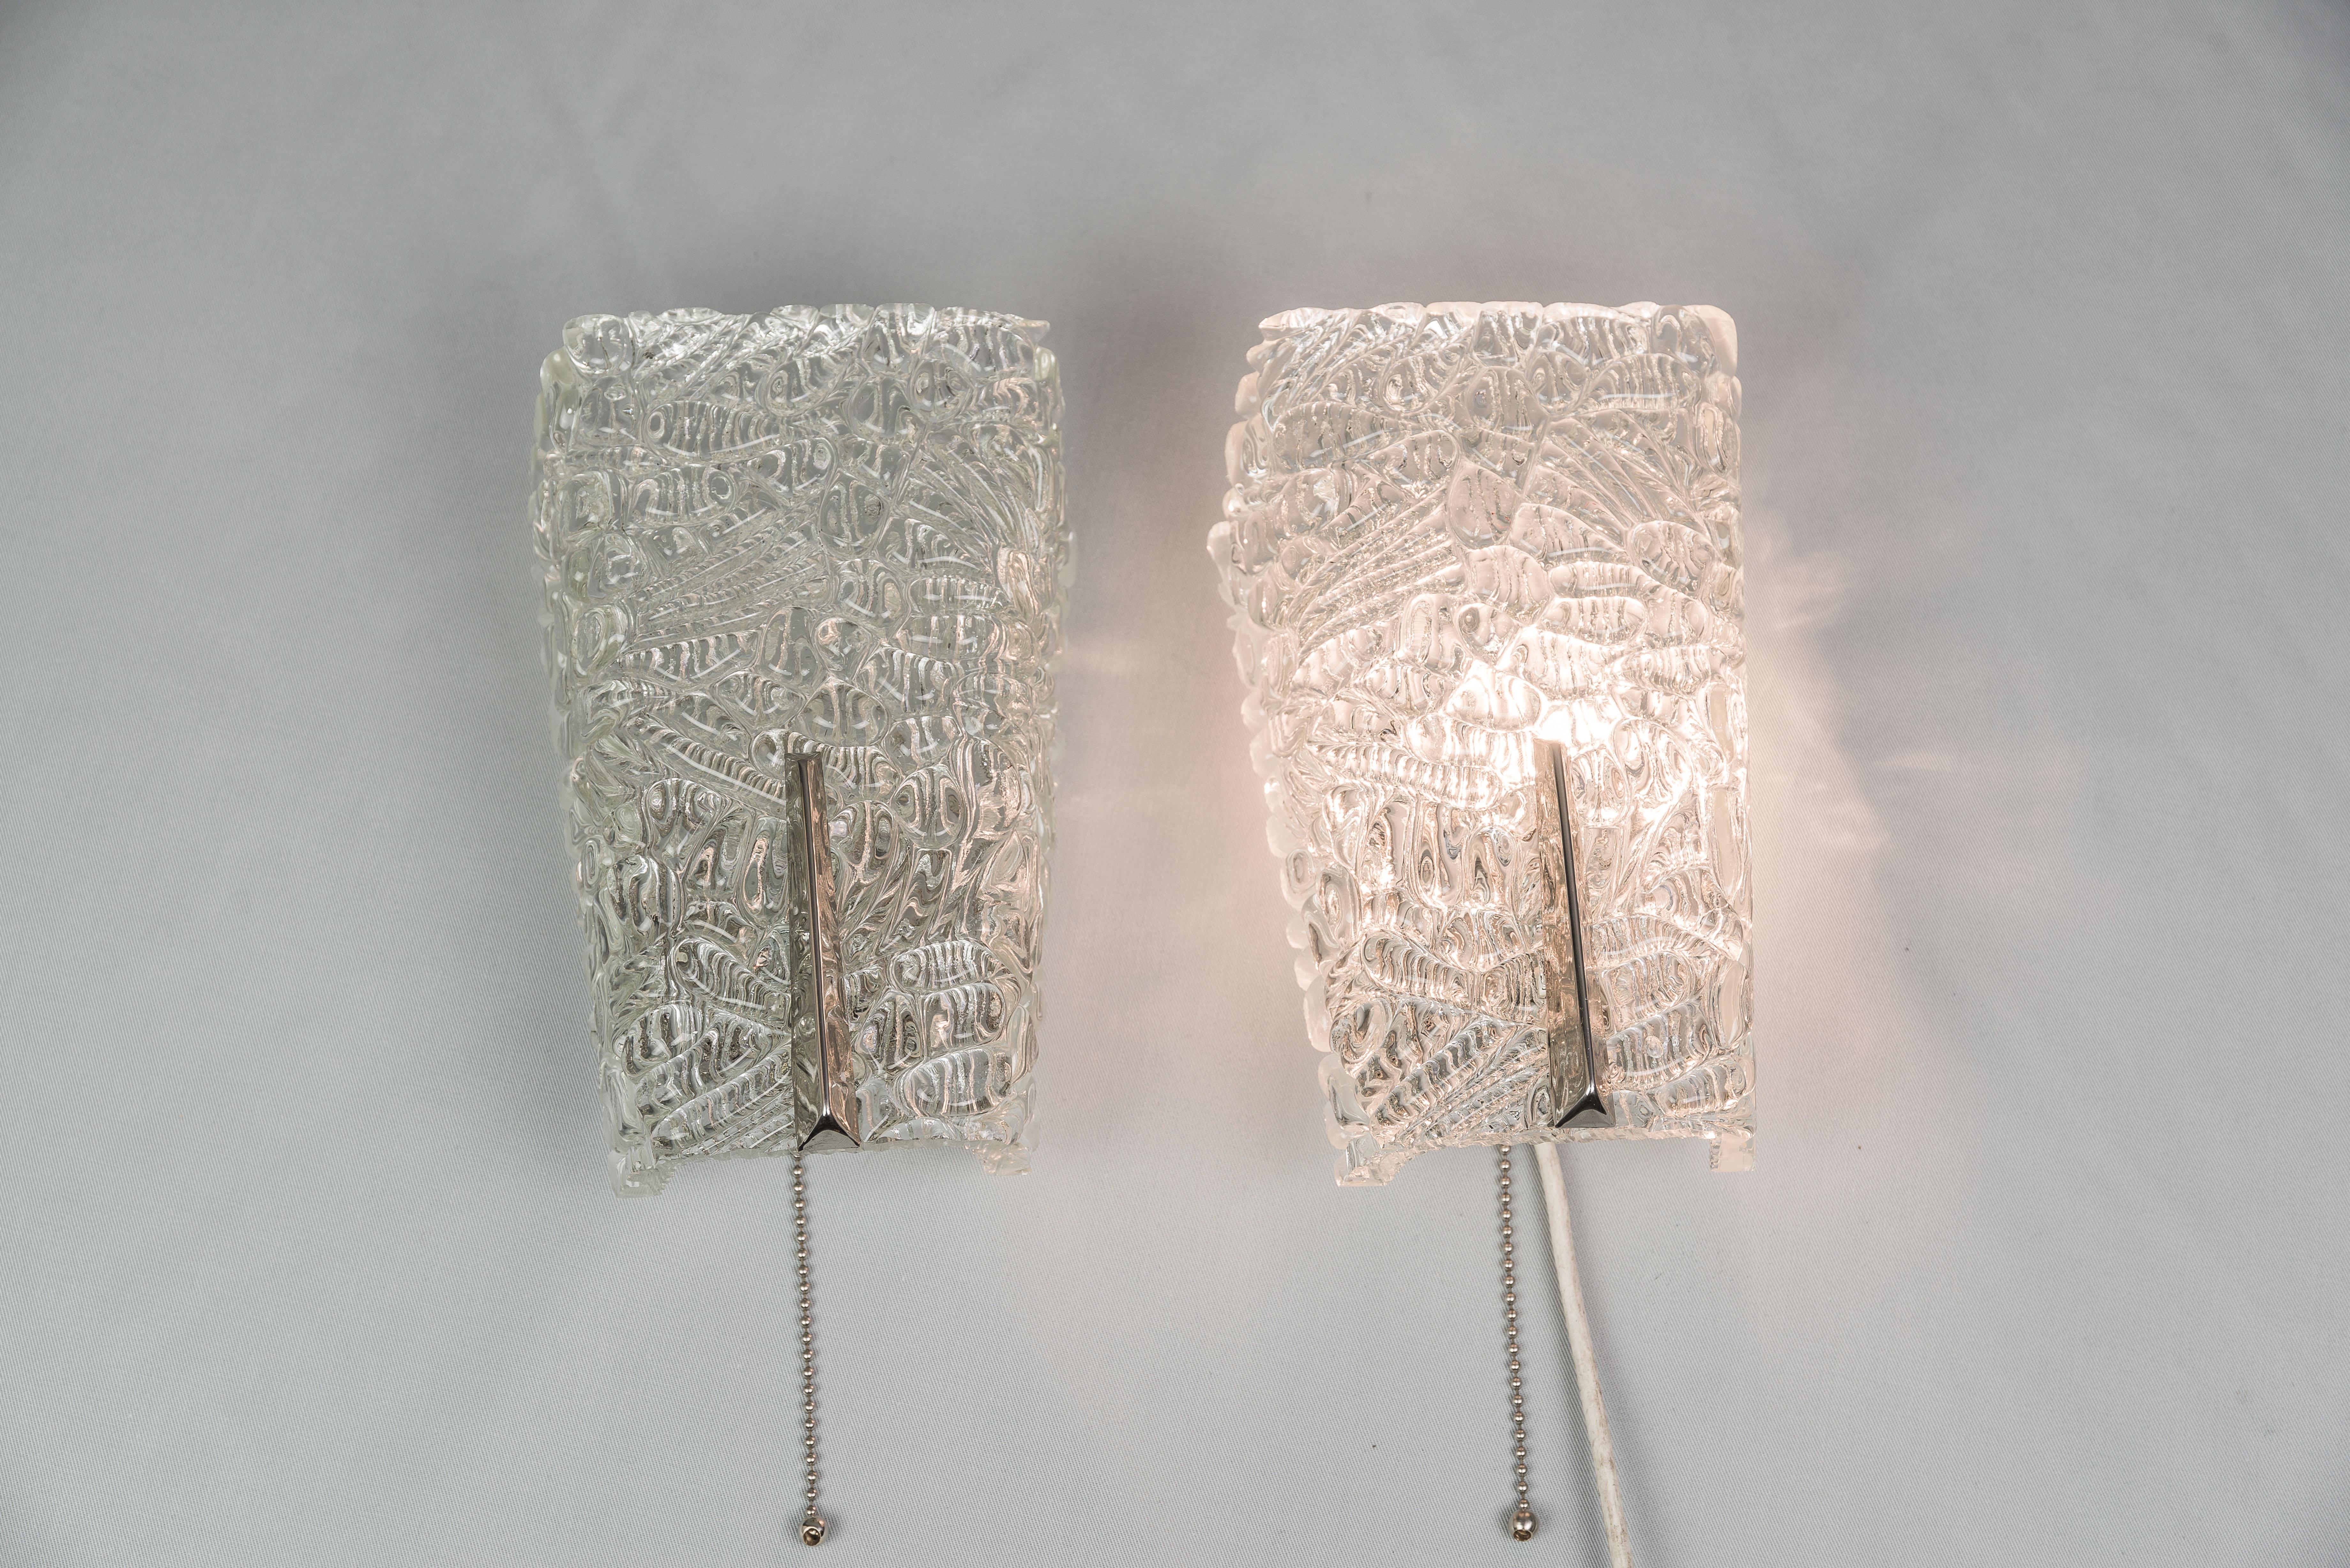 Zwei J.T Kalmar-Leuchten mit strukturiertem Glas und Nickelteilen, um 1950
Originalzustand
Preis des Paares.